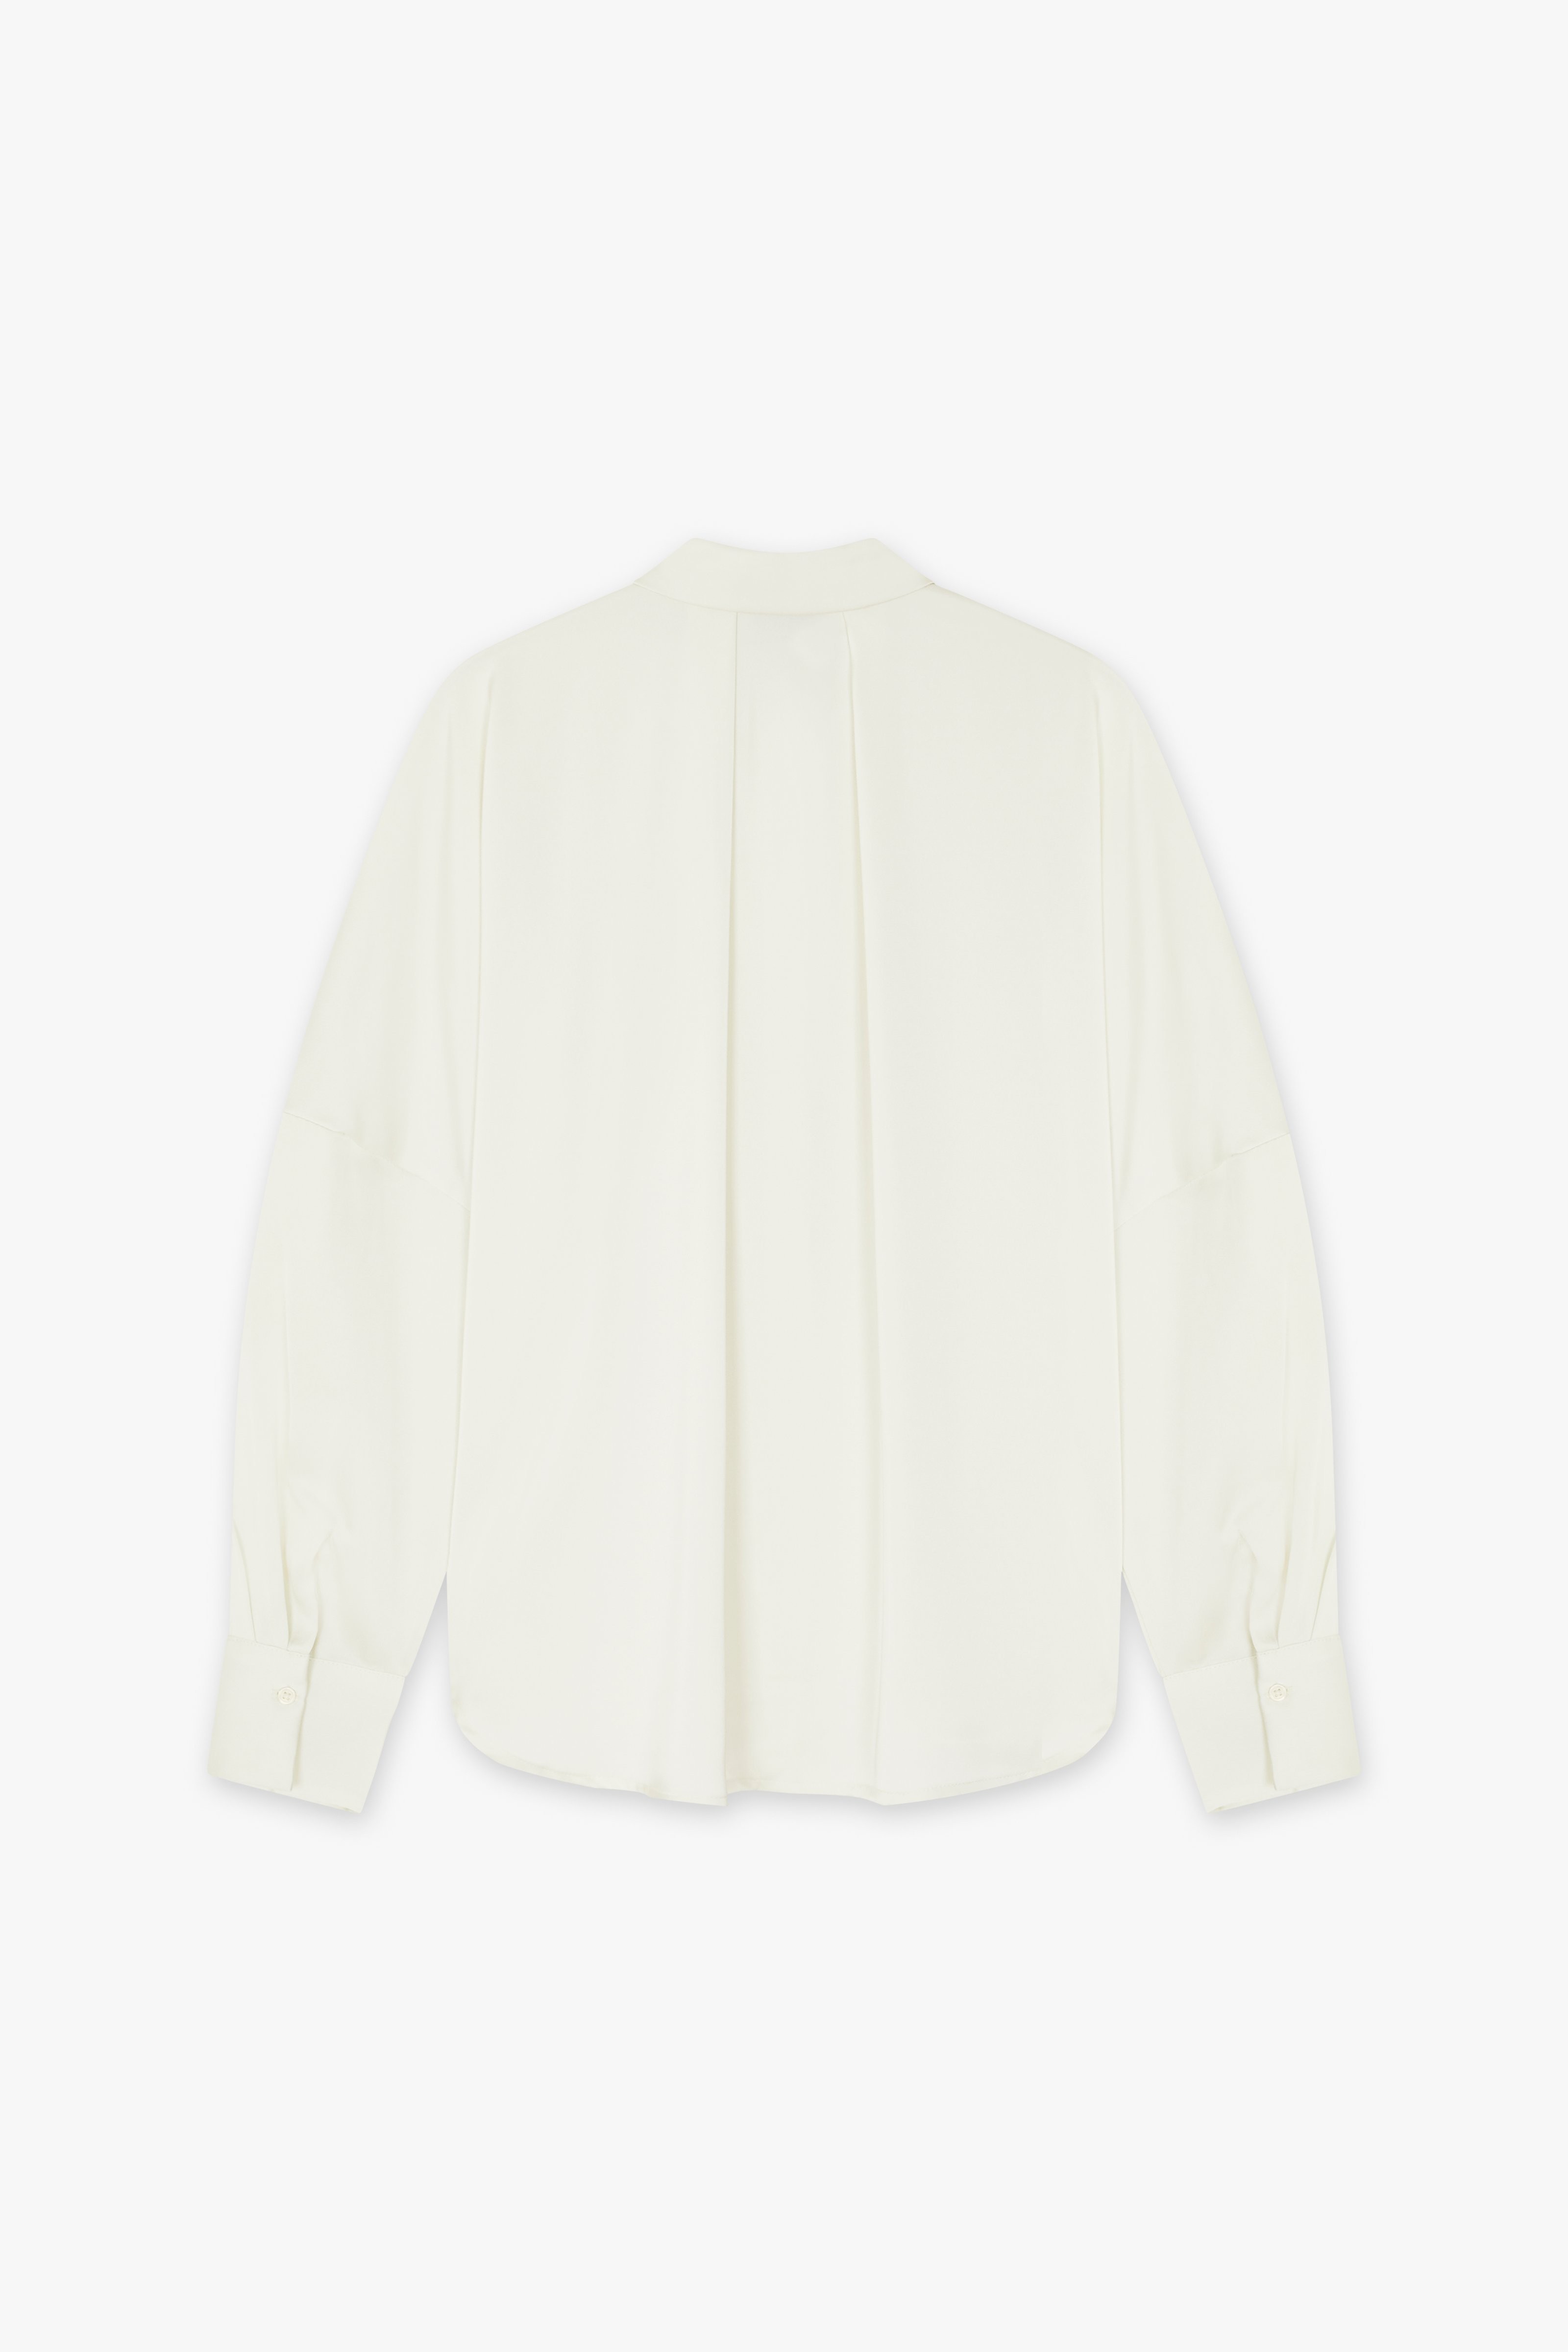 CKS Dames - SANZA - blouse lange mouwen - wit